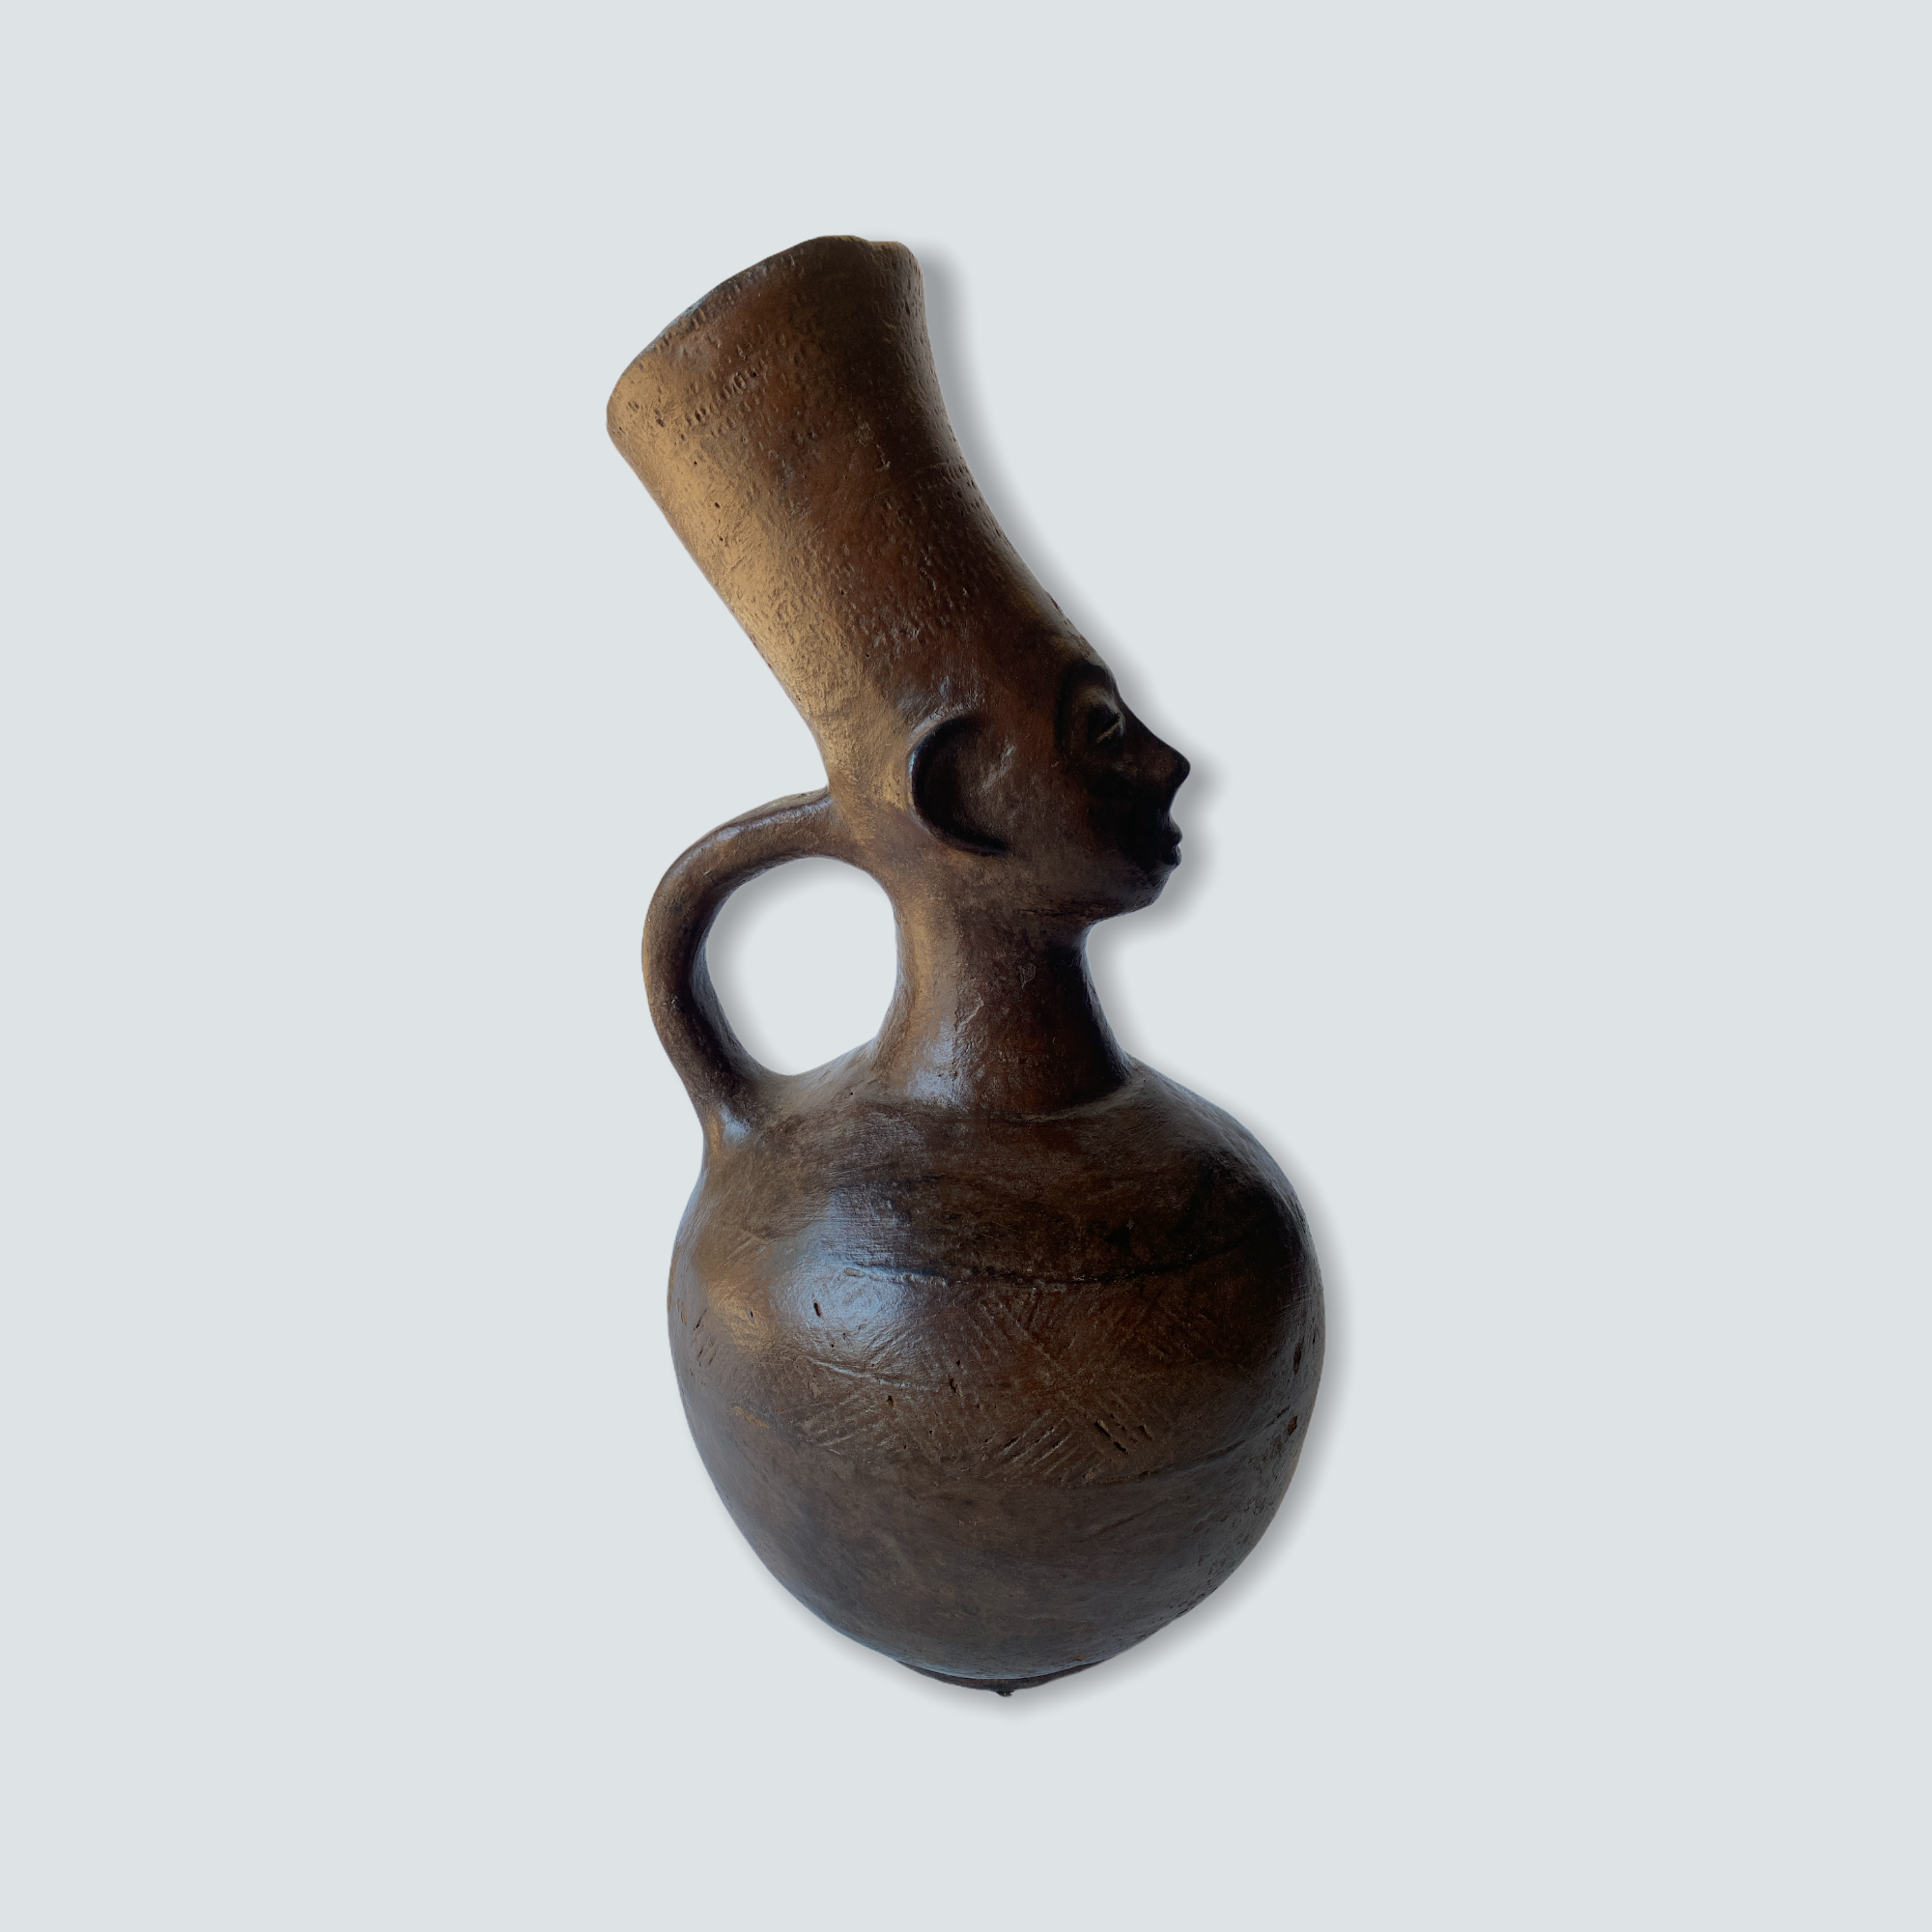 Mangbetu figural clay pot